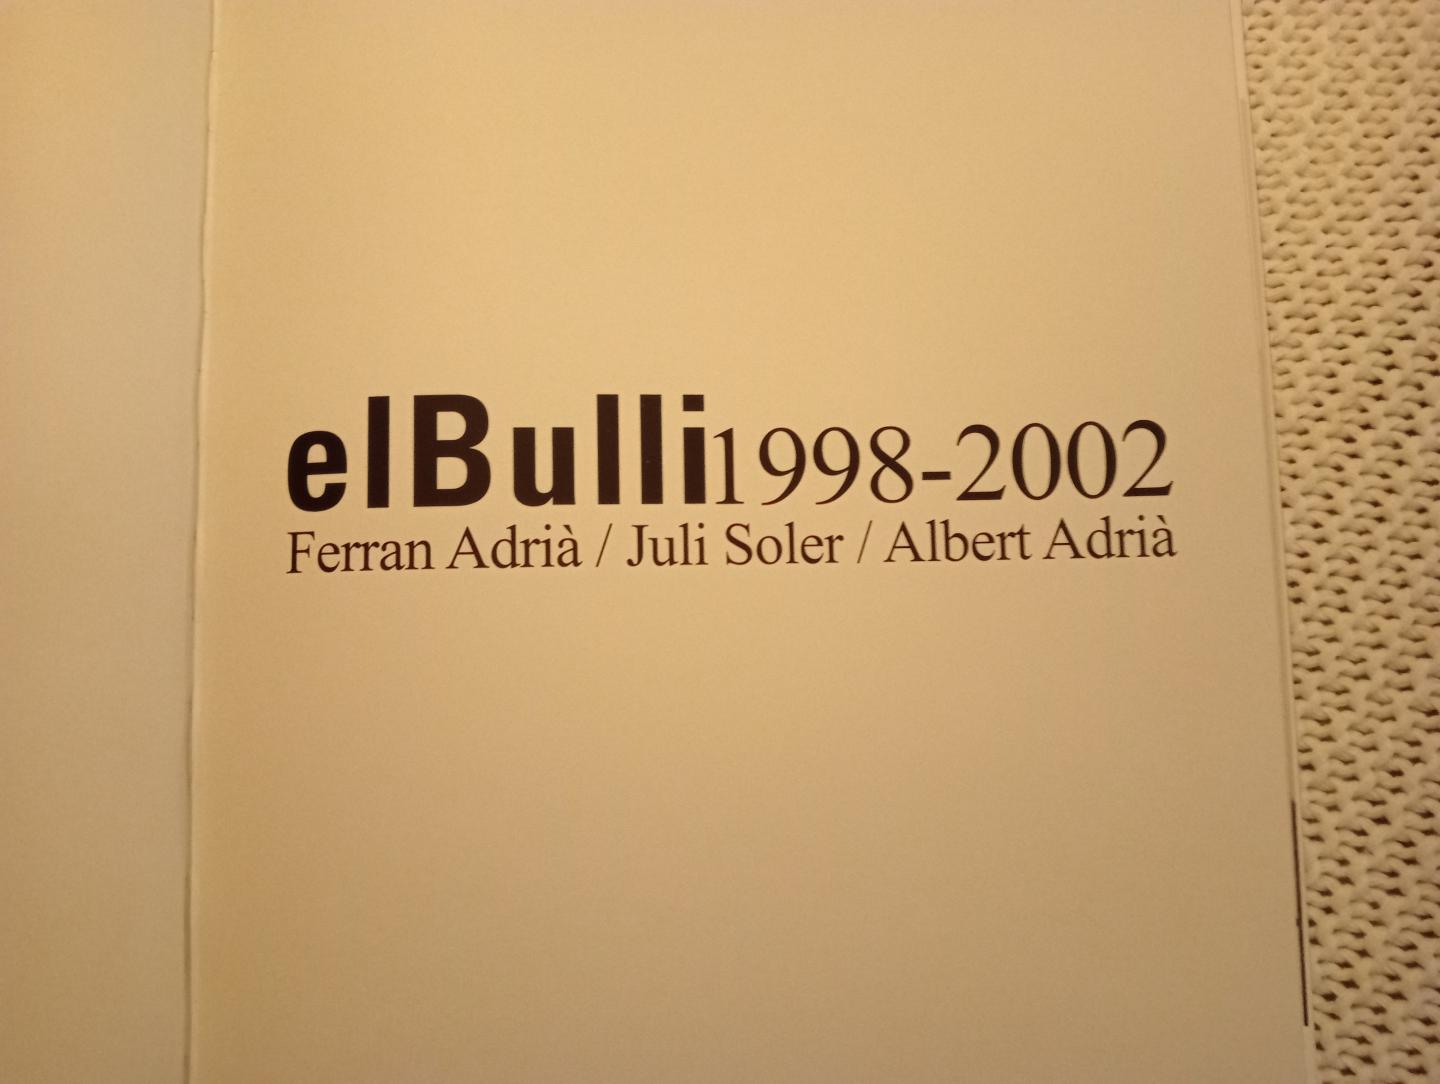 Ferran Adria , Juli Soler, Albert Adria - elBulli1998-2002